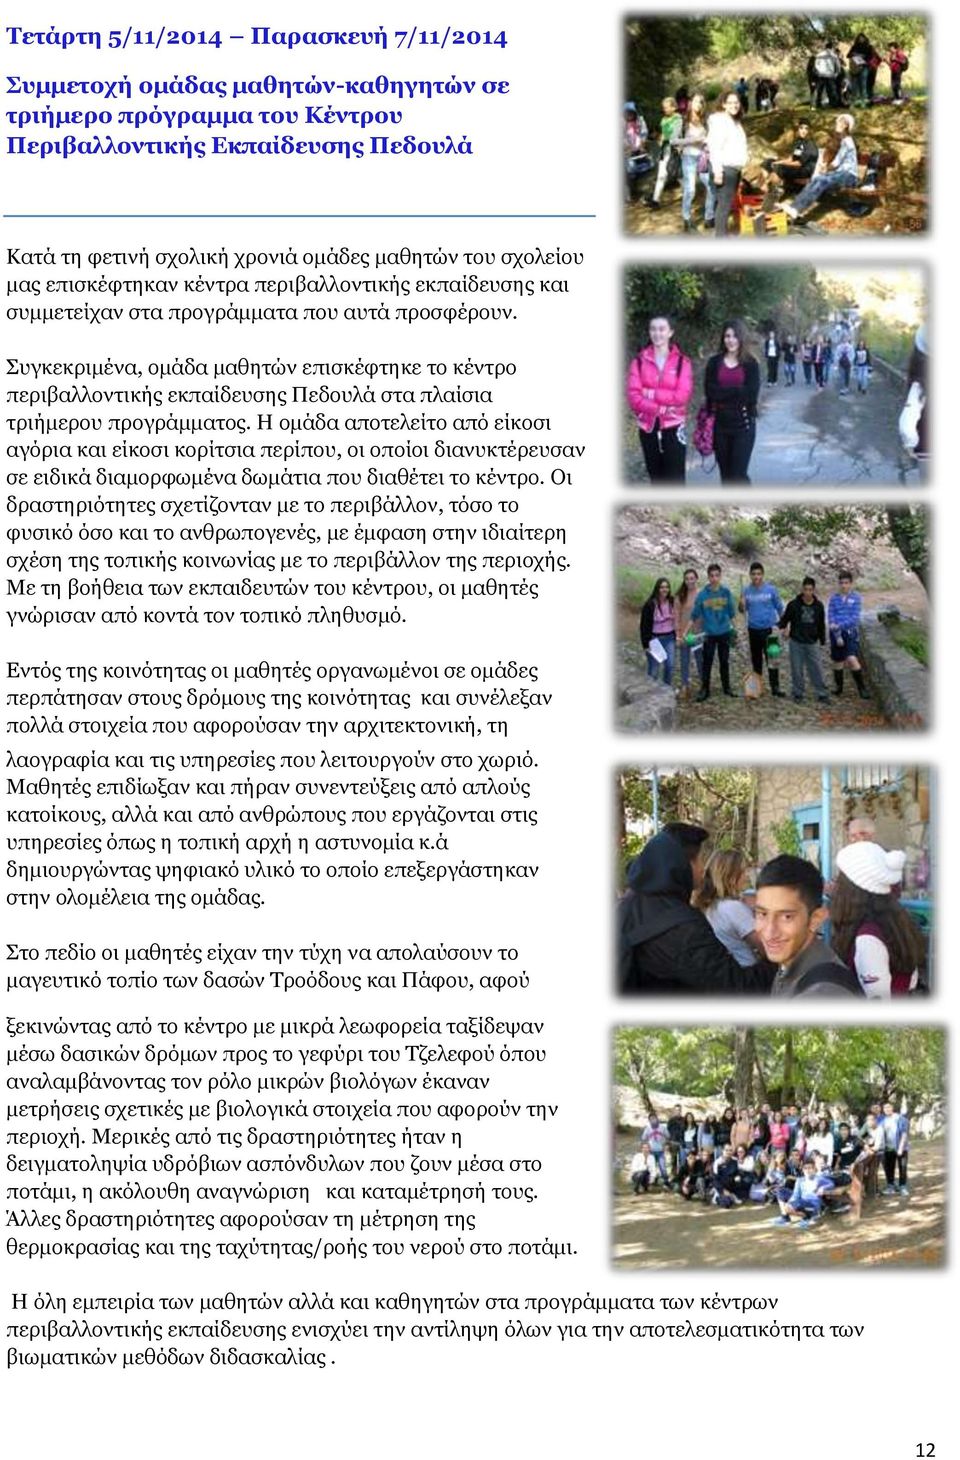 Συγκεκριμένα, ομάδα μαθητών επισκέφτηκε το κέντρο περιβαλλοντικής εκπαίδευσης Πεδουλά στα πλαίσια τριήμερου προγράμματος.